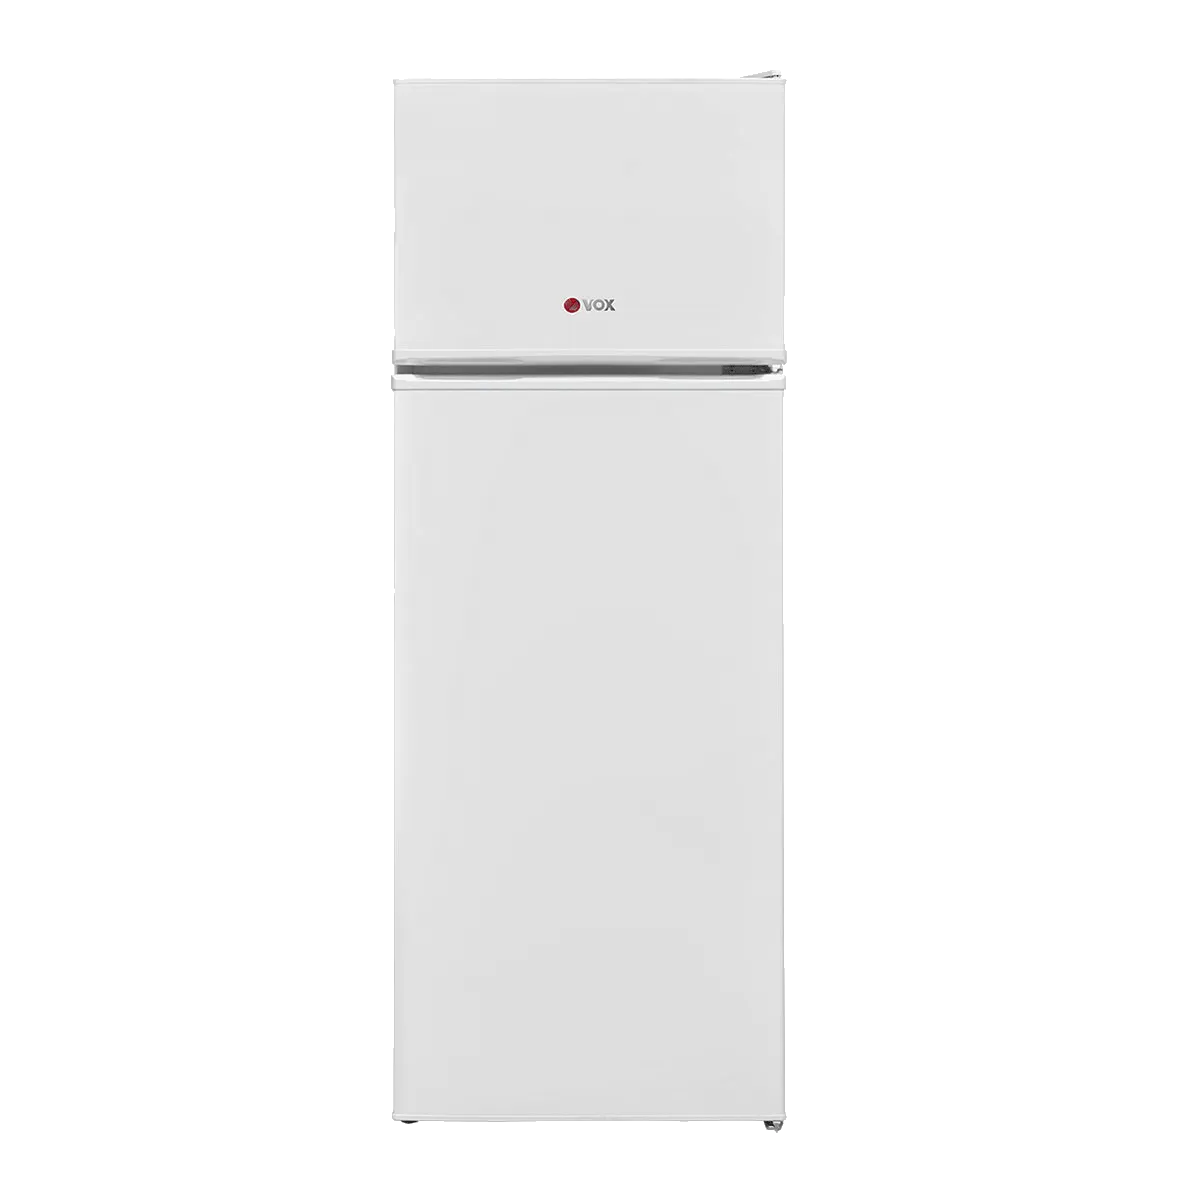 Refrigerator KG 2550 E 